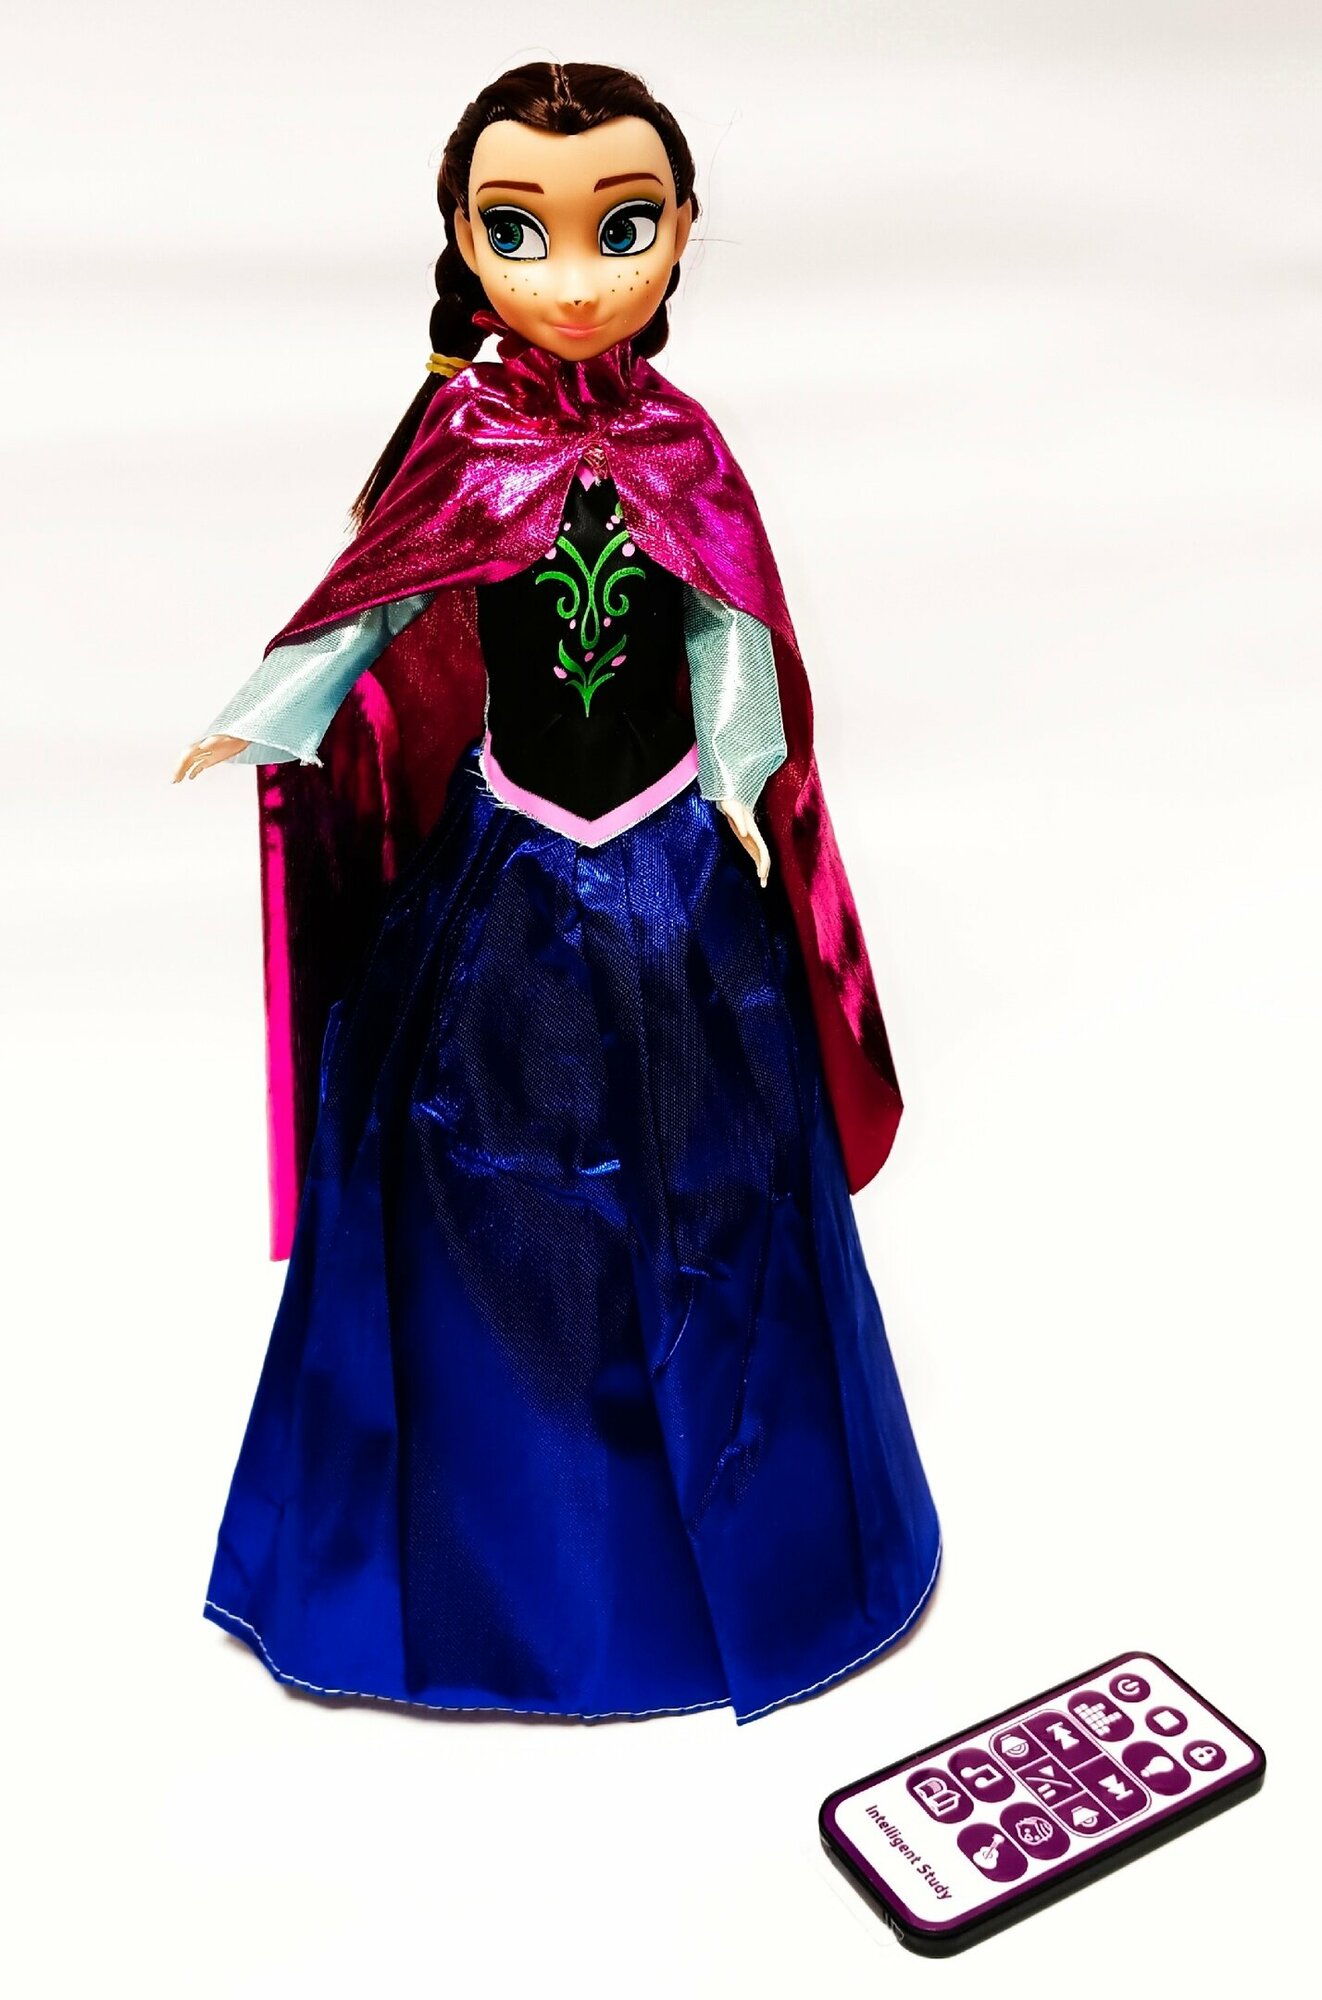 Интерактивная кукла Disney Frozen Анна, поет, читает сказки, танцует